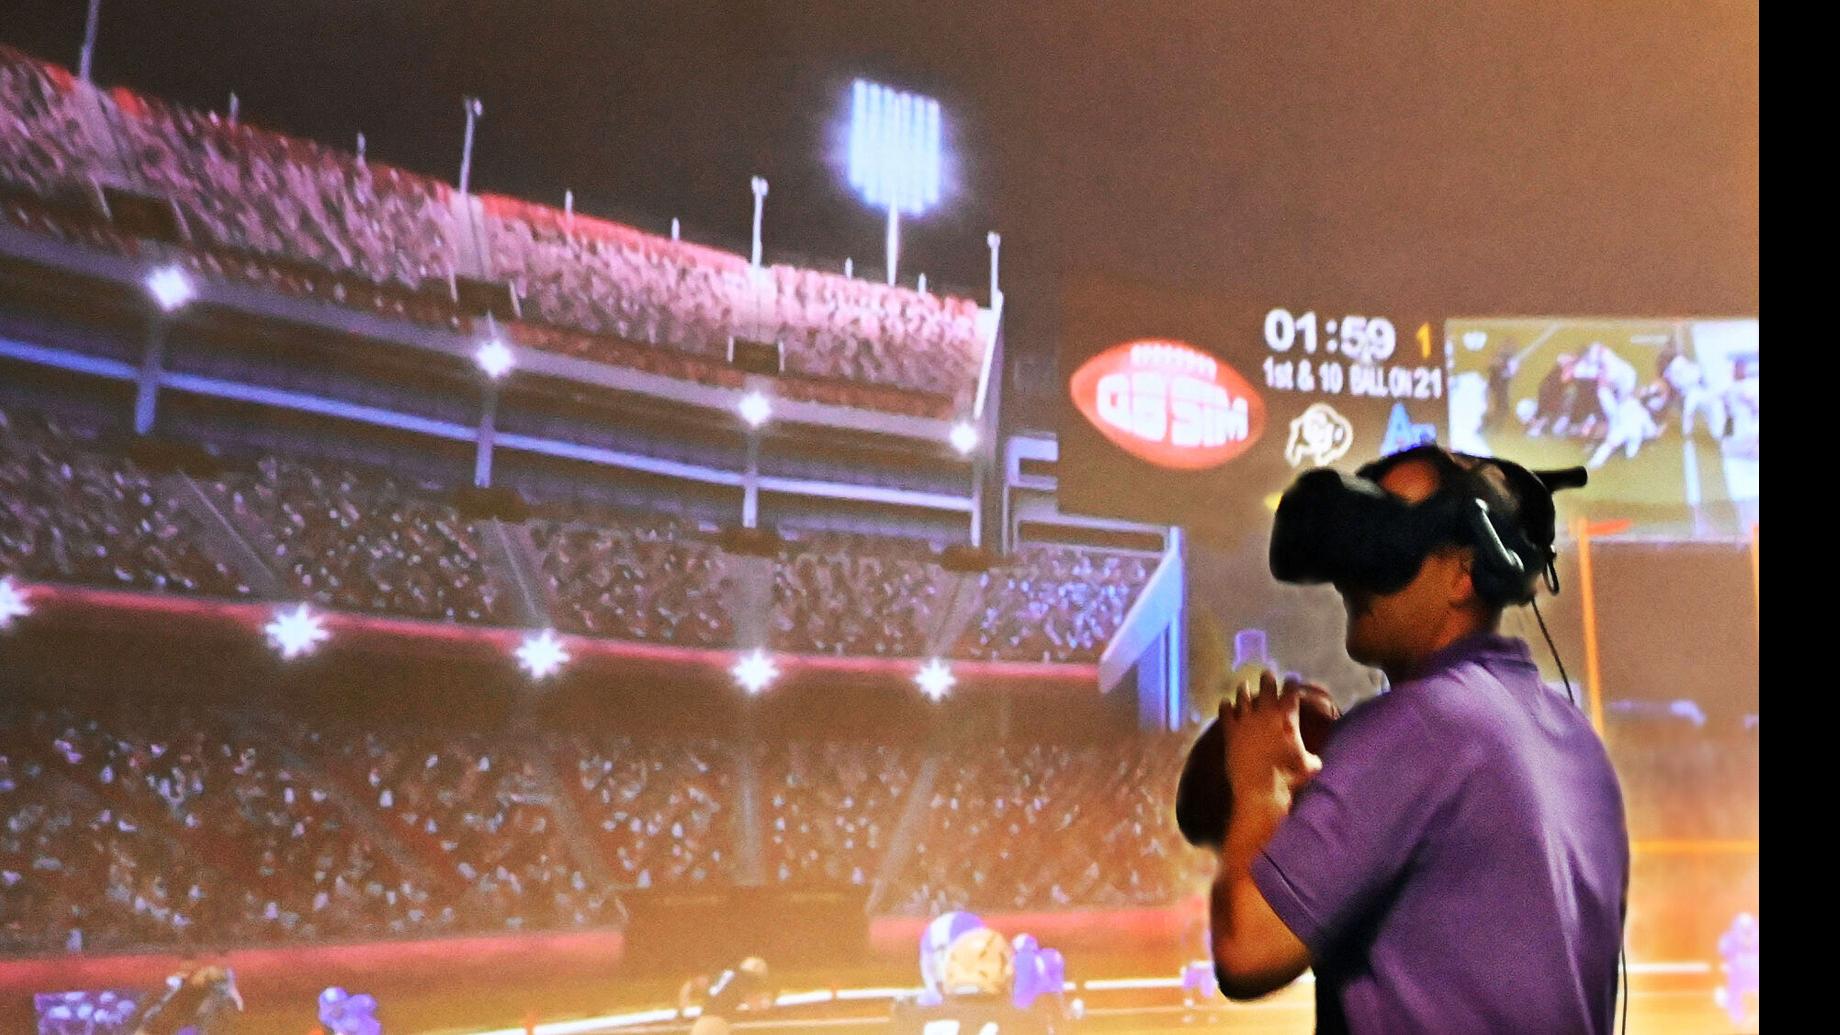 REPS - Virtual Reality, Sports Training